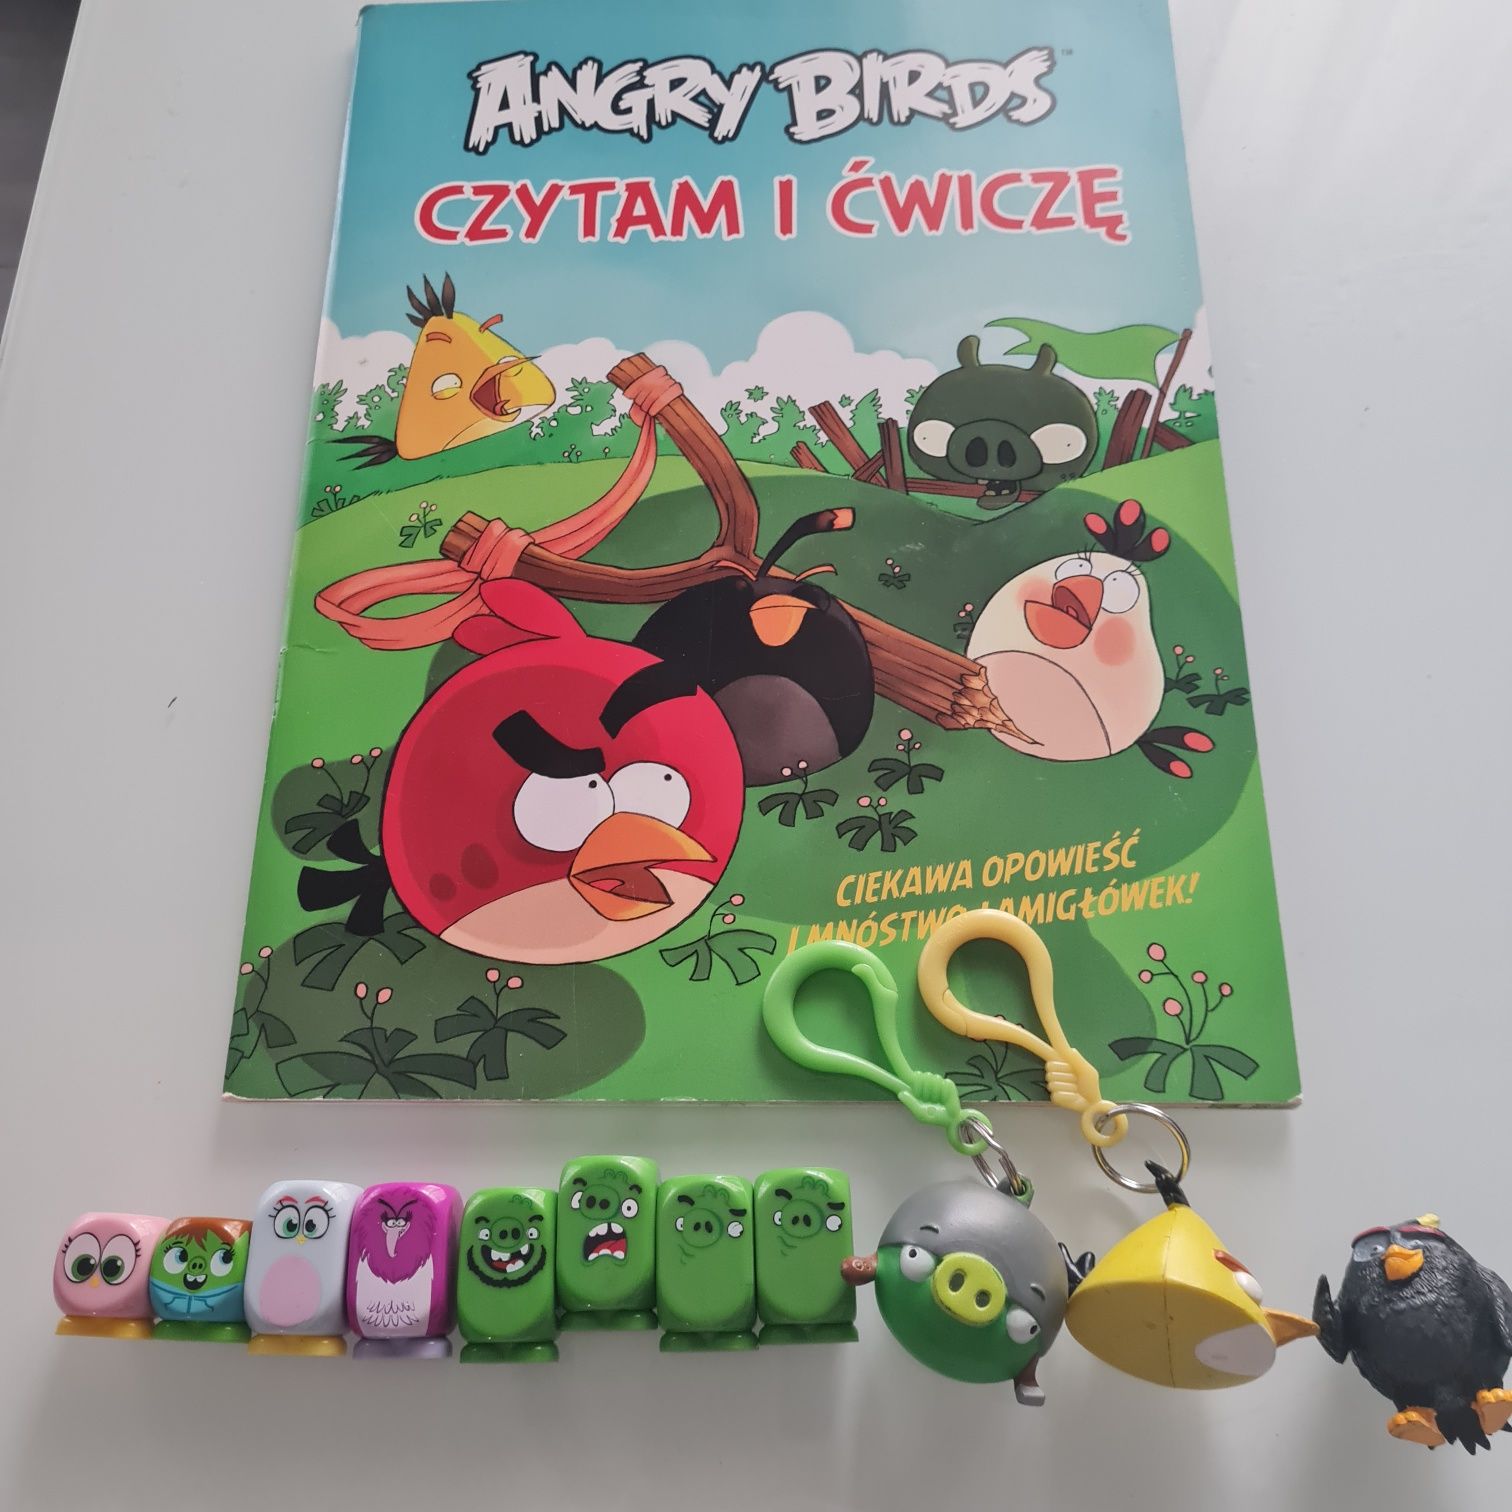 Angry Birds ksiazka i figurki